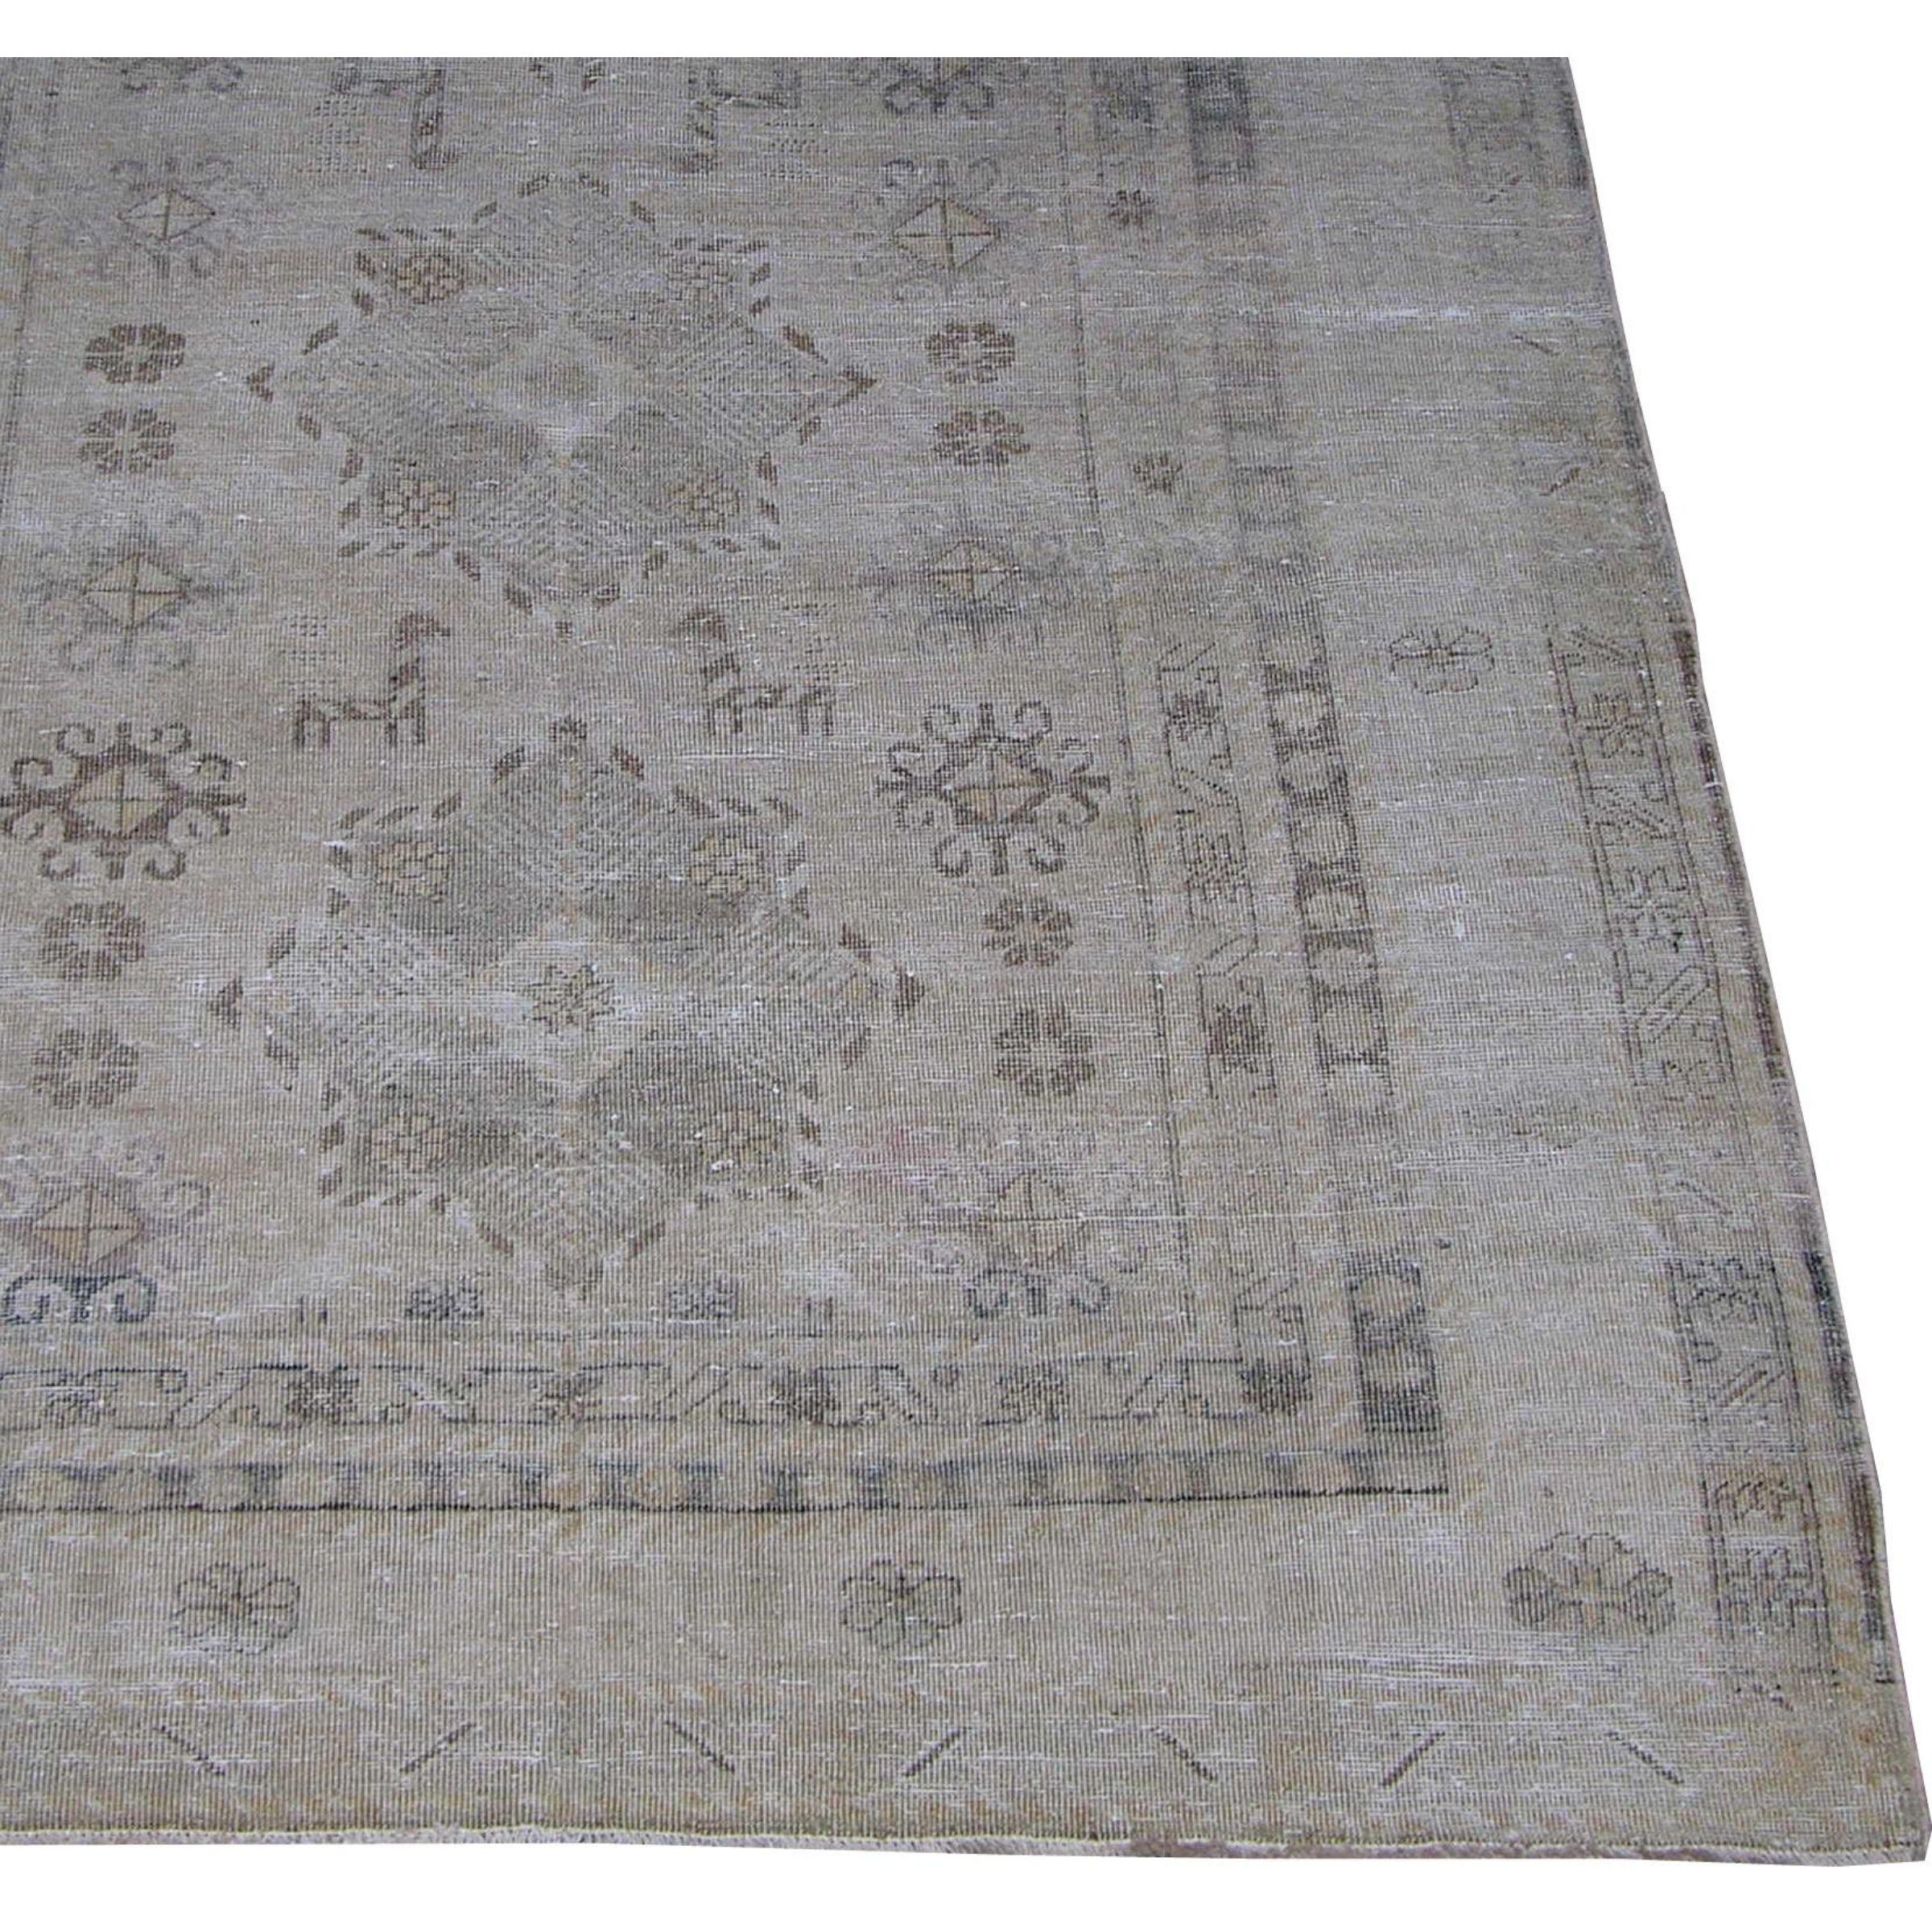 Zum Verkauf steht ein antiker, dekorativer Khotan-Samarkand-Teppich aus den 1900er Jahren. Dieser Teppich ist aus Wolle auf Baumwollbasis gefertigt. Sie ist stammesgebunden und traditionell